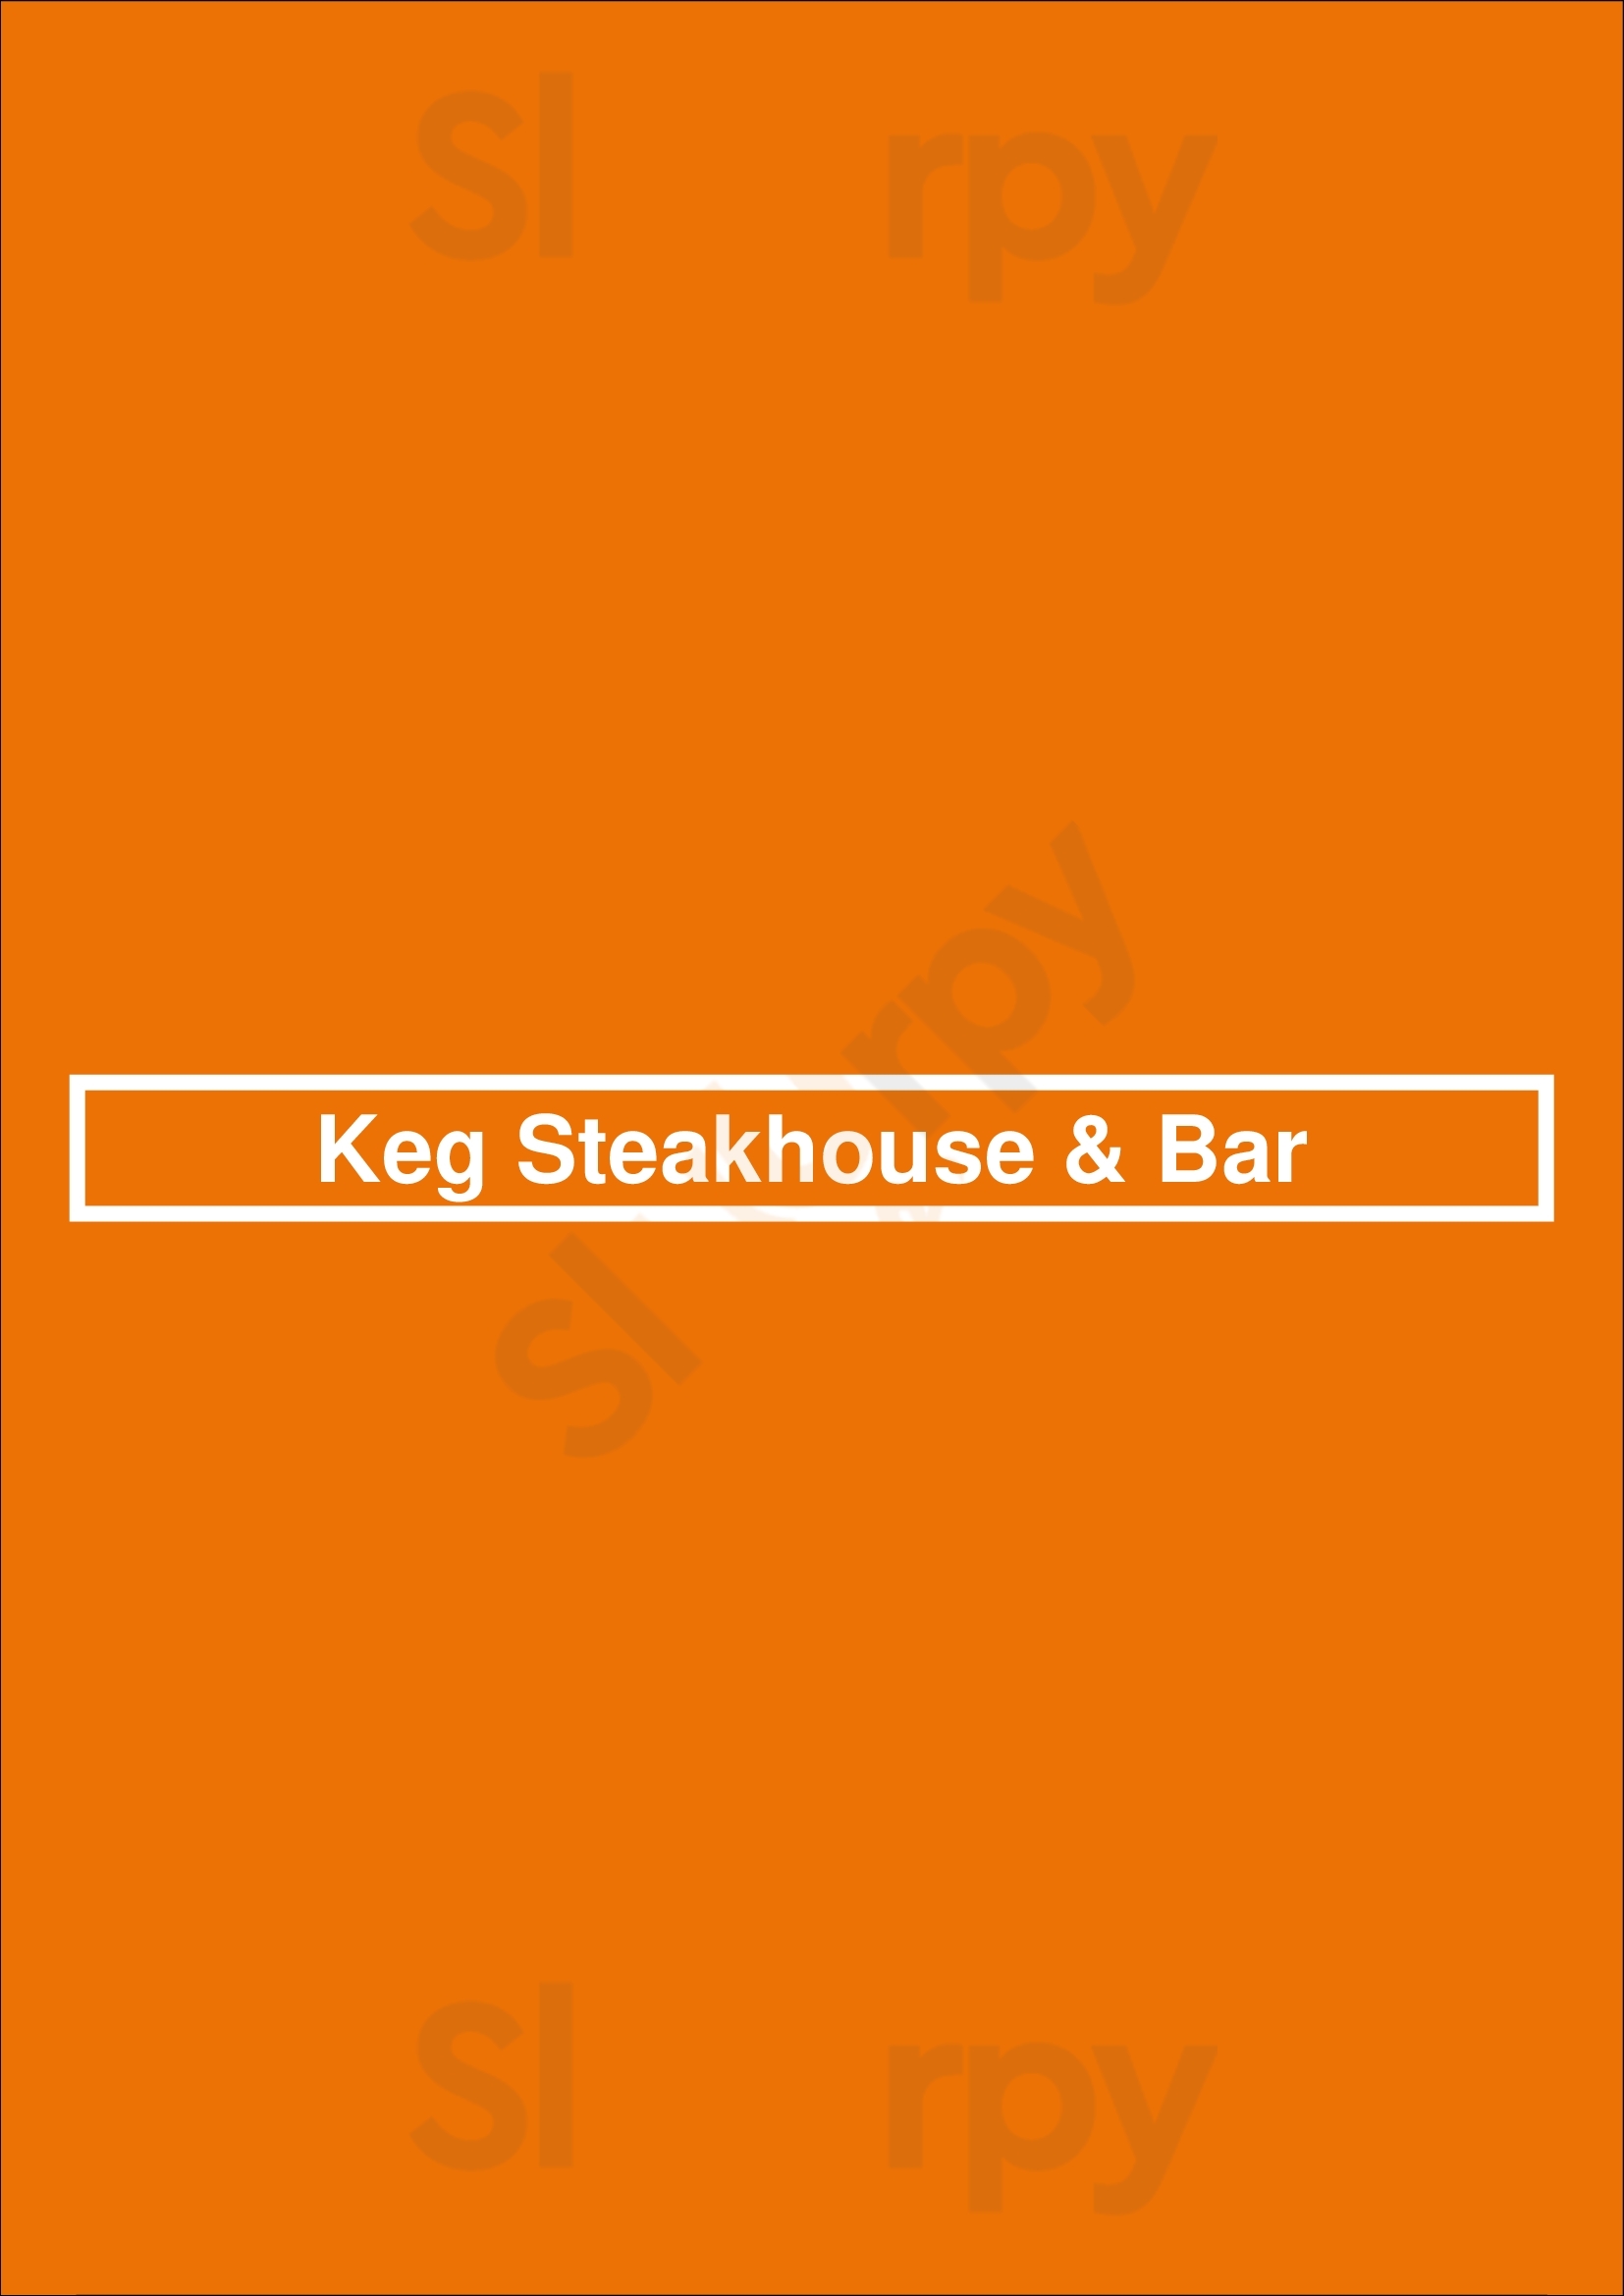 The Keg Steakhouse + Bar - Richmond South Richmond Menu - 1